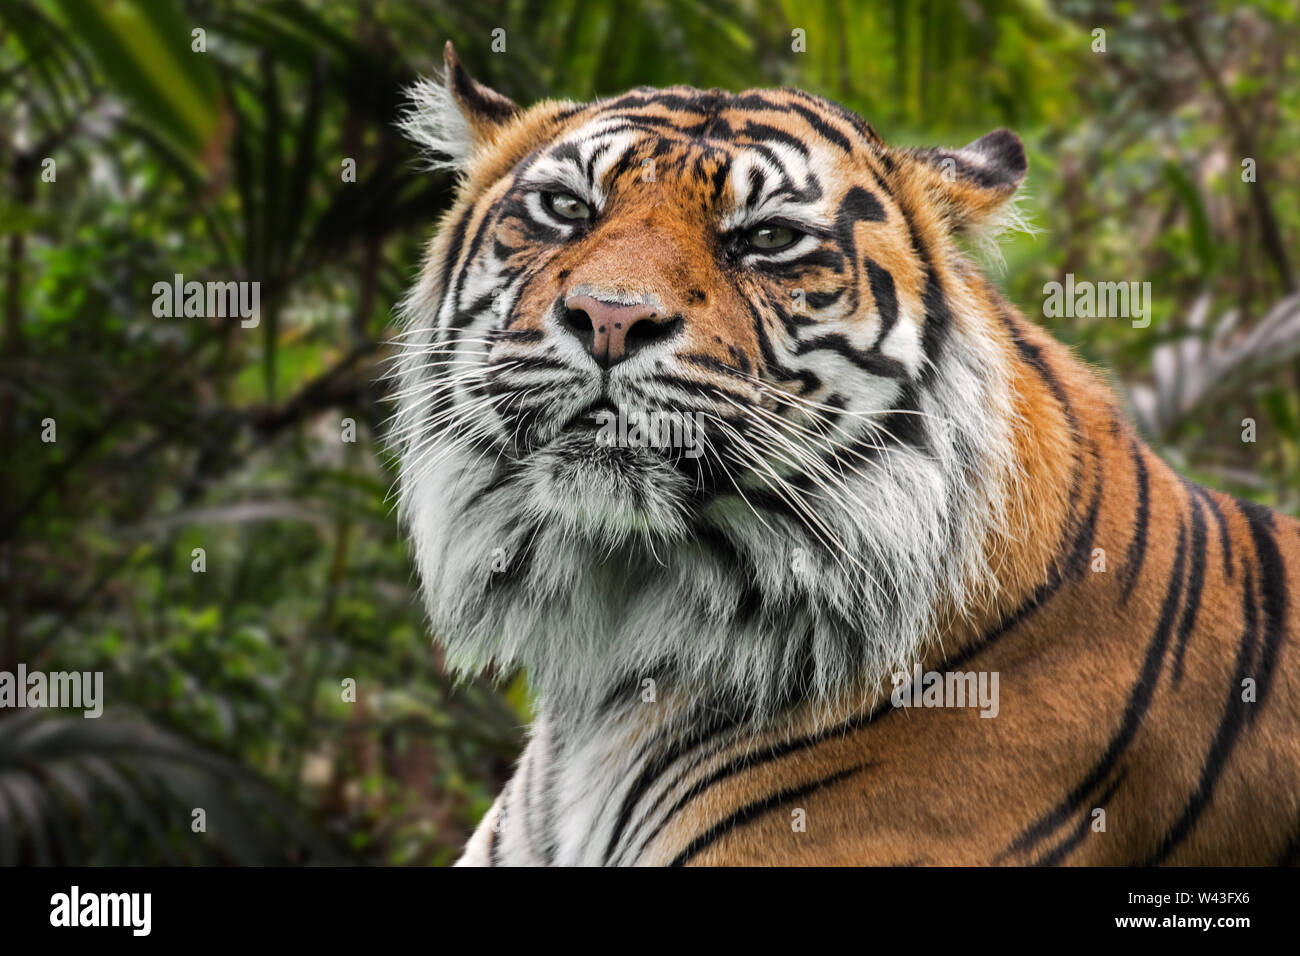 Tigre de Sumatra (Panthera tigris sondaica) en el bosque tropical, nativo de la isla indonesia de Sumatra, Indonesia Foto de stock